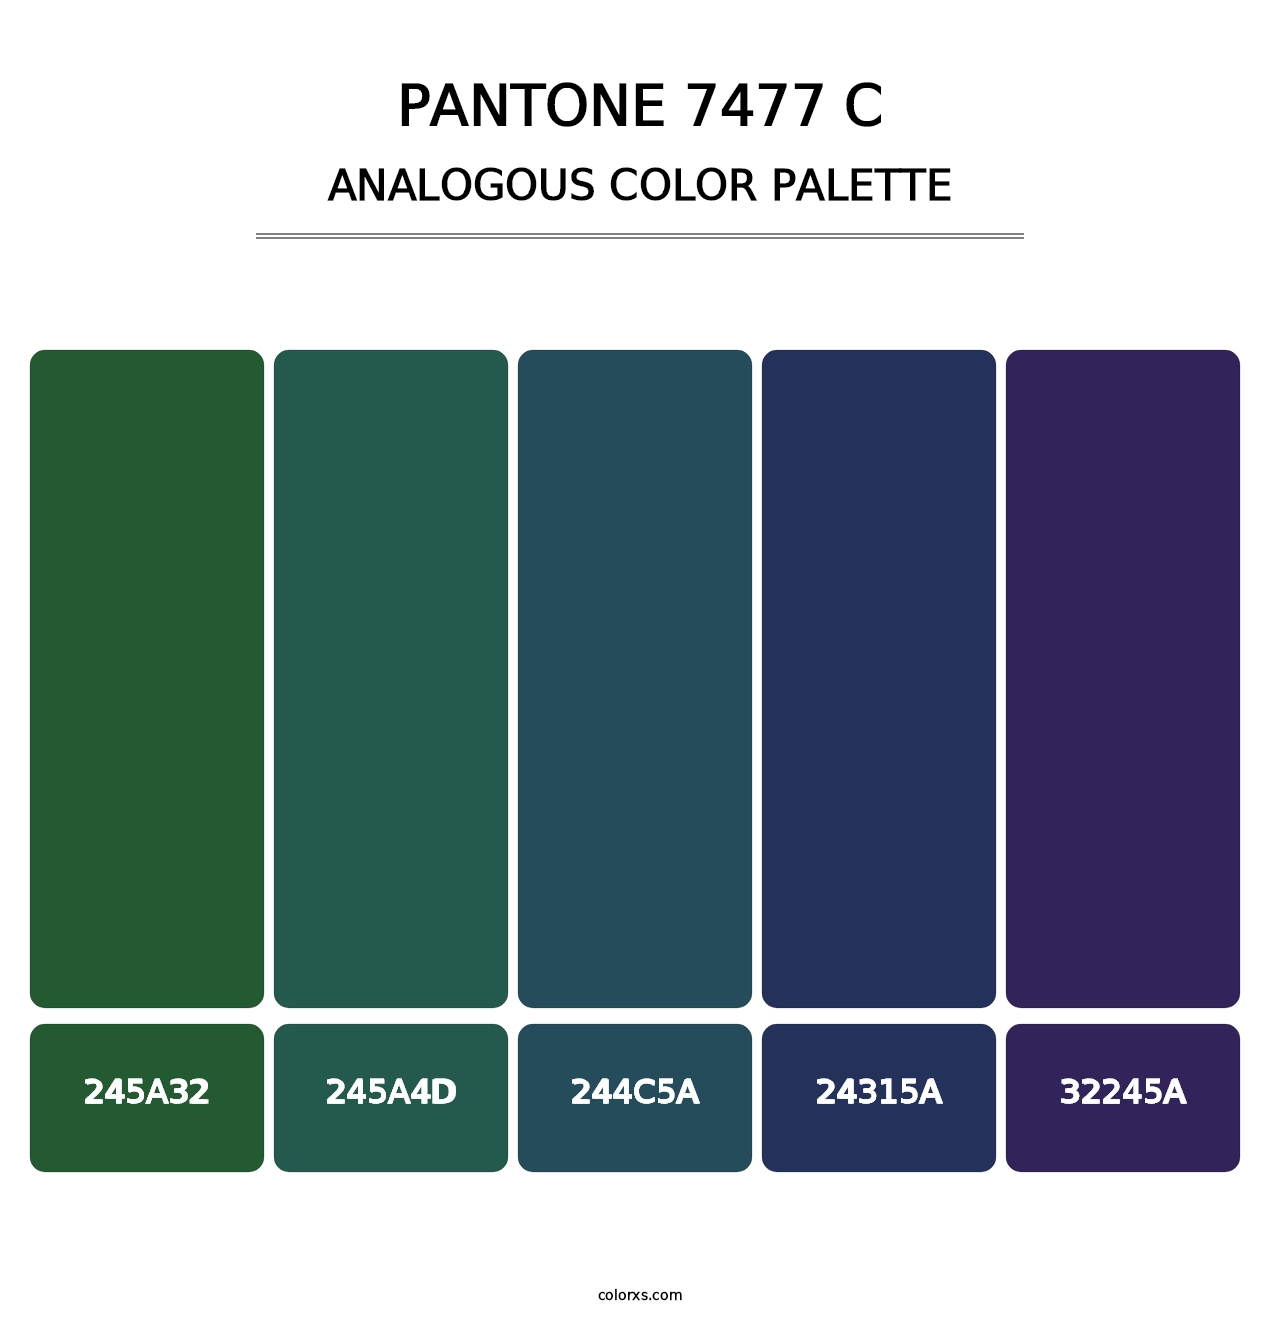 PANTONE 7477 C - Analogous Color Palette